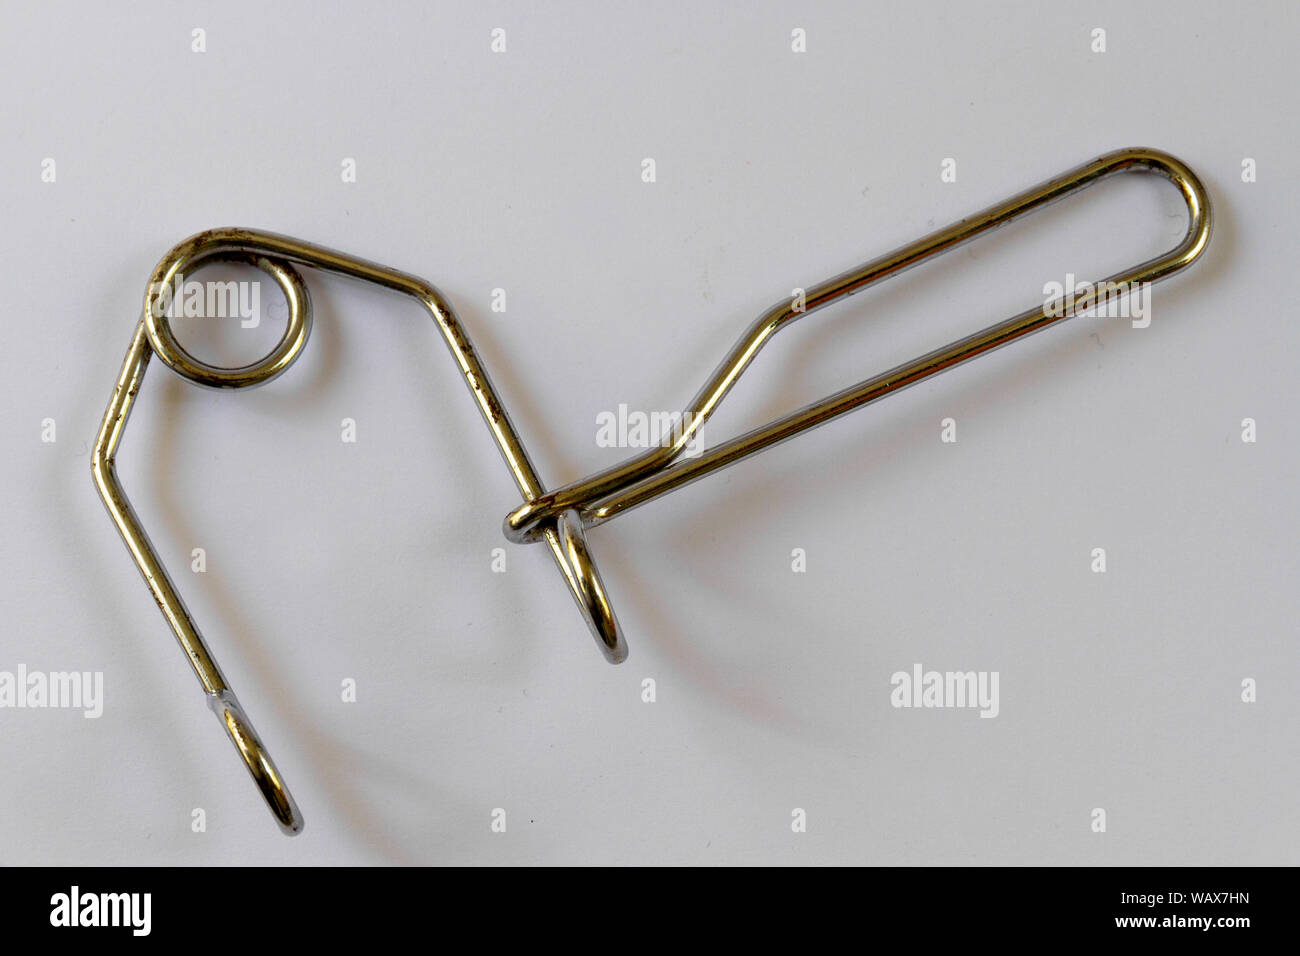 Ansicht von oben ein Kabel, dritte Hand Werkzeug Fahrrad Bremsen zusammen  zu ziehen, um sie zu ändern, auf einen einfachen Hintergrund isoliert  Stockfotografie - Alamy